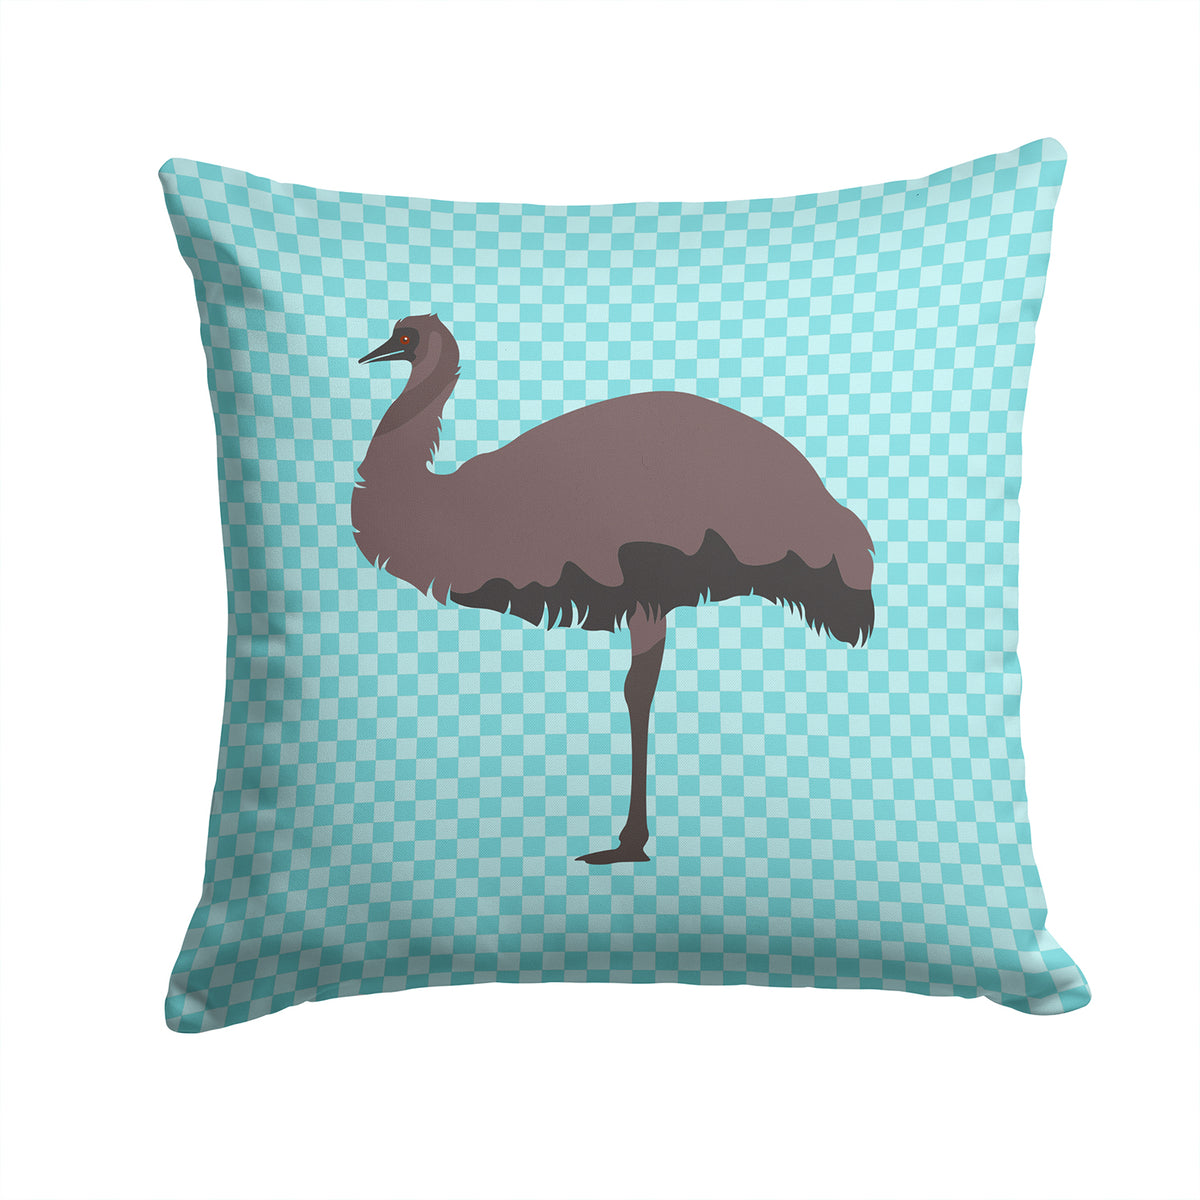 Emu Blue Check Fabric Decorative Pillow BB8096PW1414 - the-store.com